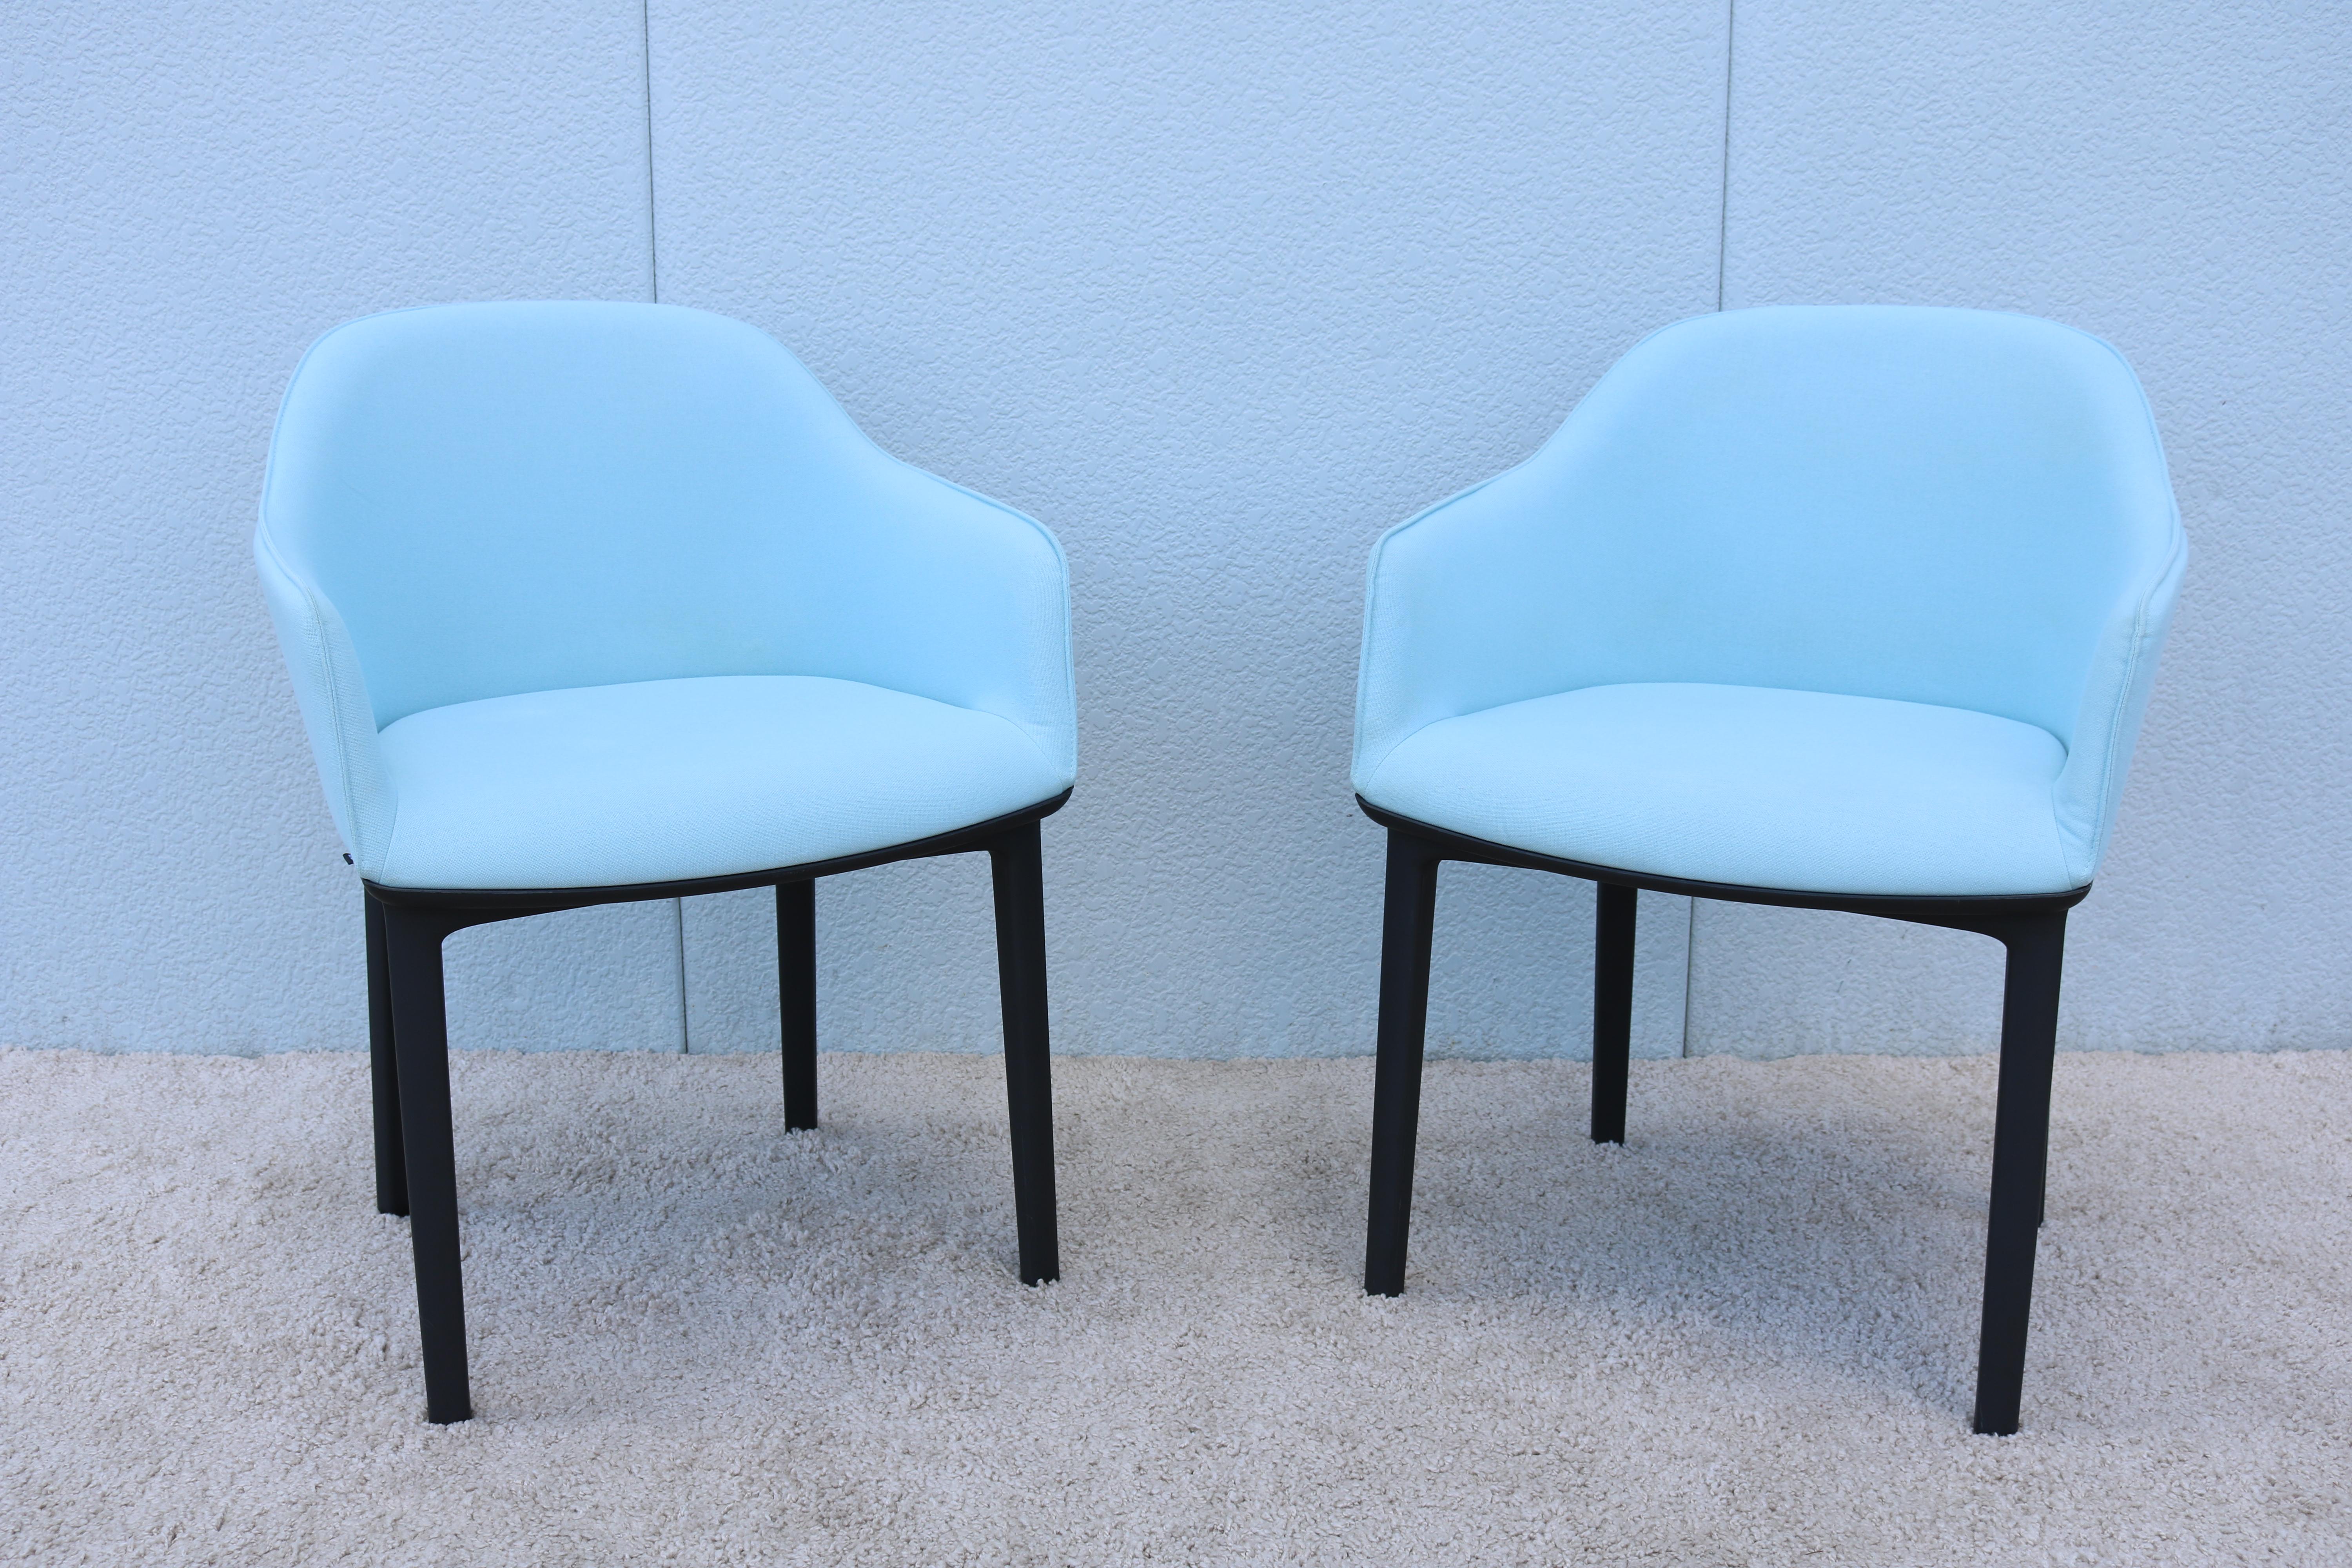 La fabuleuse chaise softshell cozy vous surprendra par son confort exceptionnel.
Constitué de nervures flexibles dissimulées dans la coque du dossier et s'adaptant aux mouvements de l'utilisateur. 
Il est conçu pour offrir un soutien parfait, un